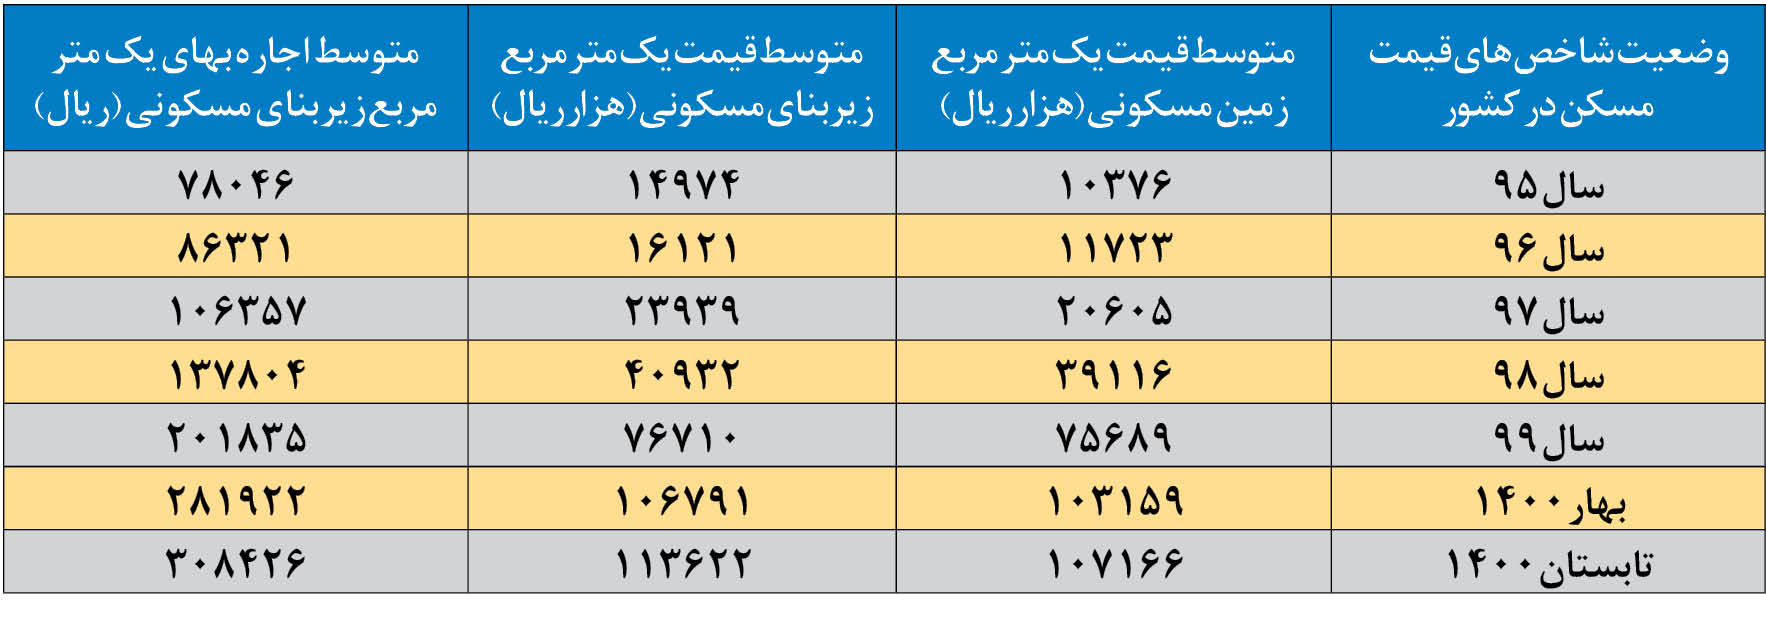 آمار جدید قیمت مسکن/ قیمت مسکن در تهران بیش از ۸ برابر در ۶ سال گذشته